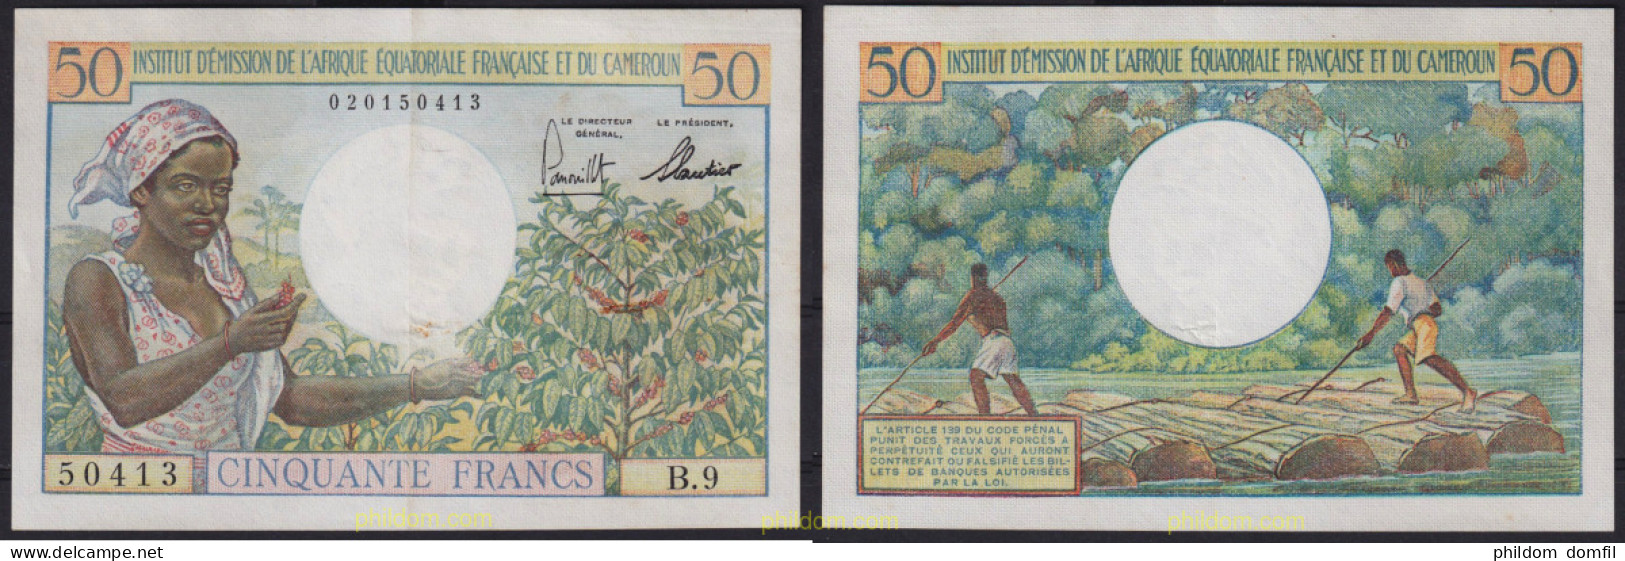 6401 CAMERUN 1957 CAMERUN 1957 50 FRANCS - Camerun